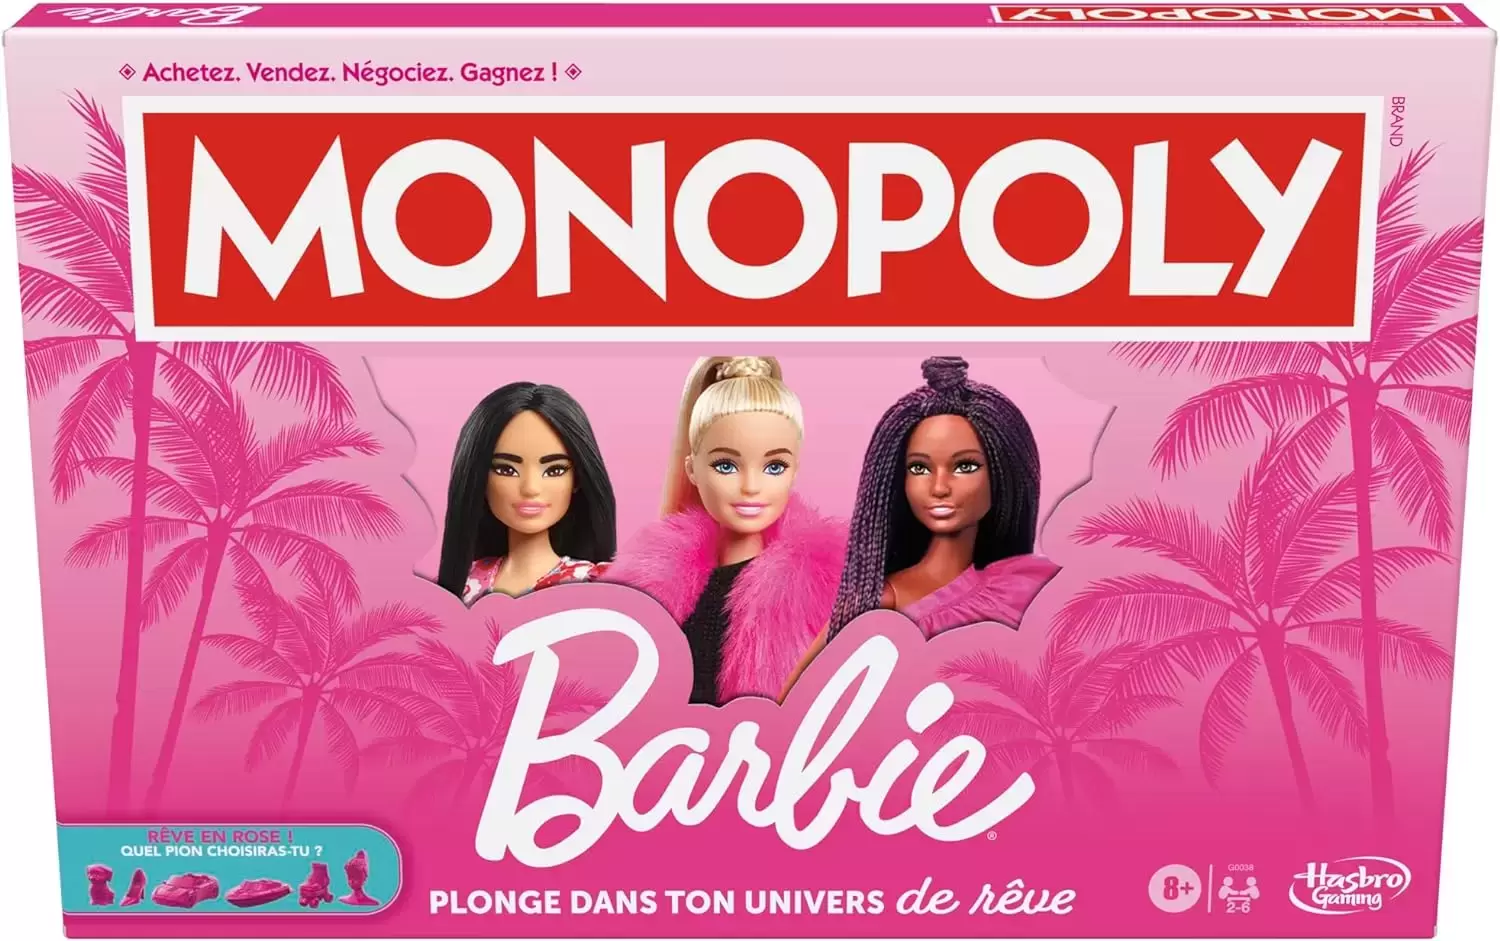 Monopoly Manga, BD, Comics - Monopoly Barbie